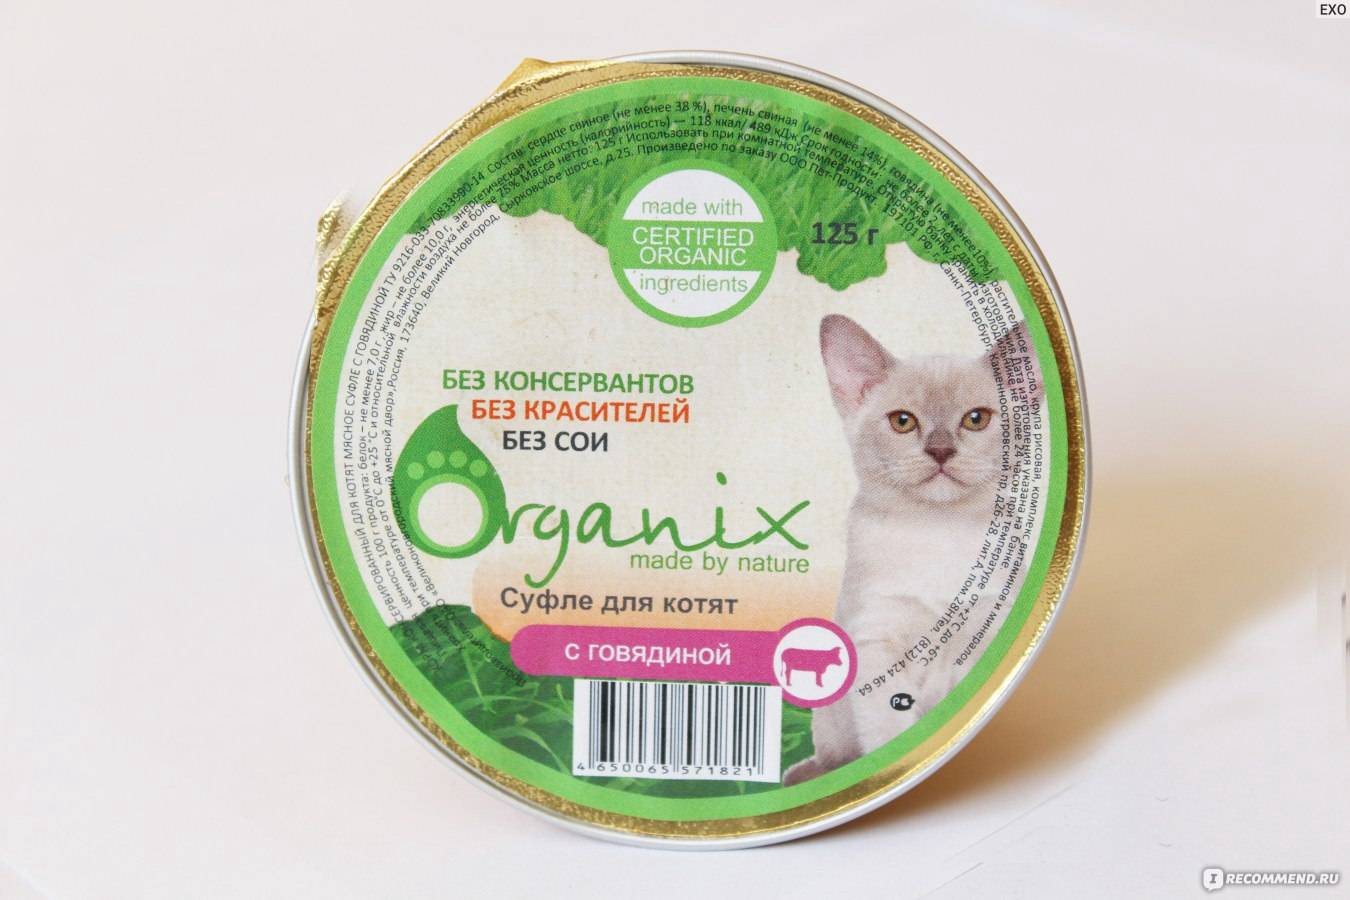 Подробный обзор продукции органикс для кошки: анализ состава кормов